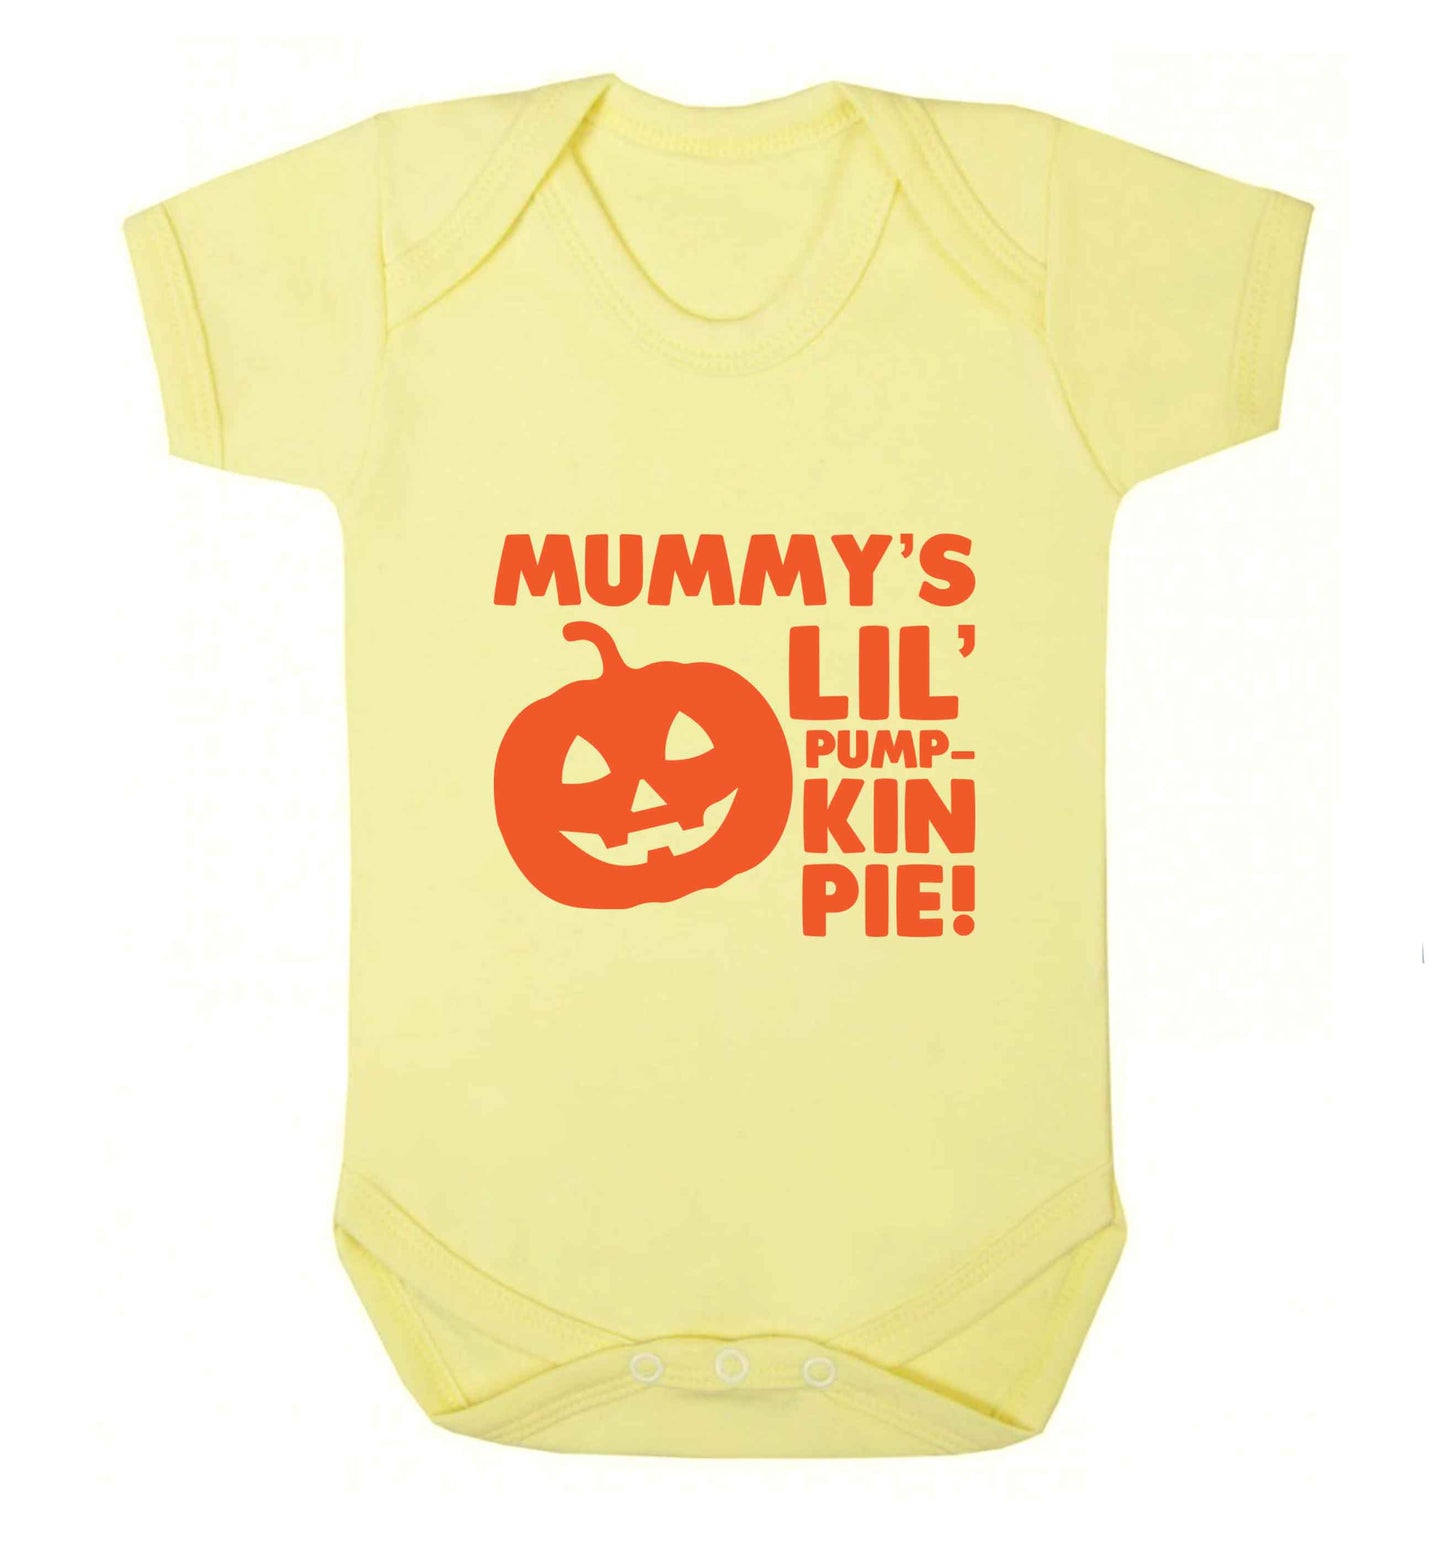 Mummy's lil' pumpkin pie baby vest pale yellow 18-24 months